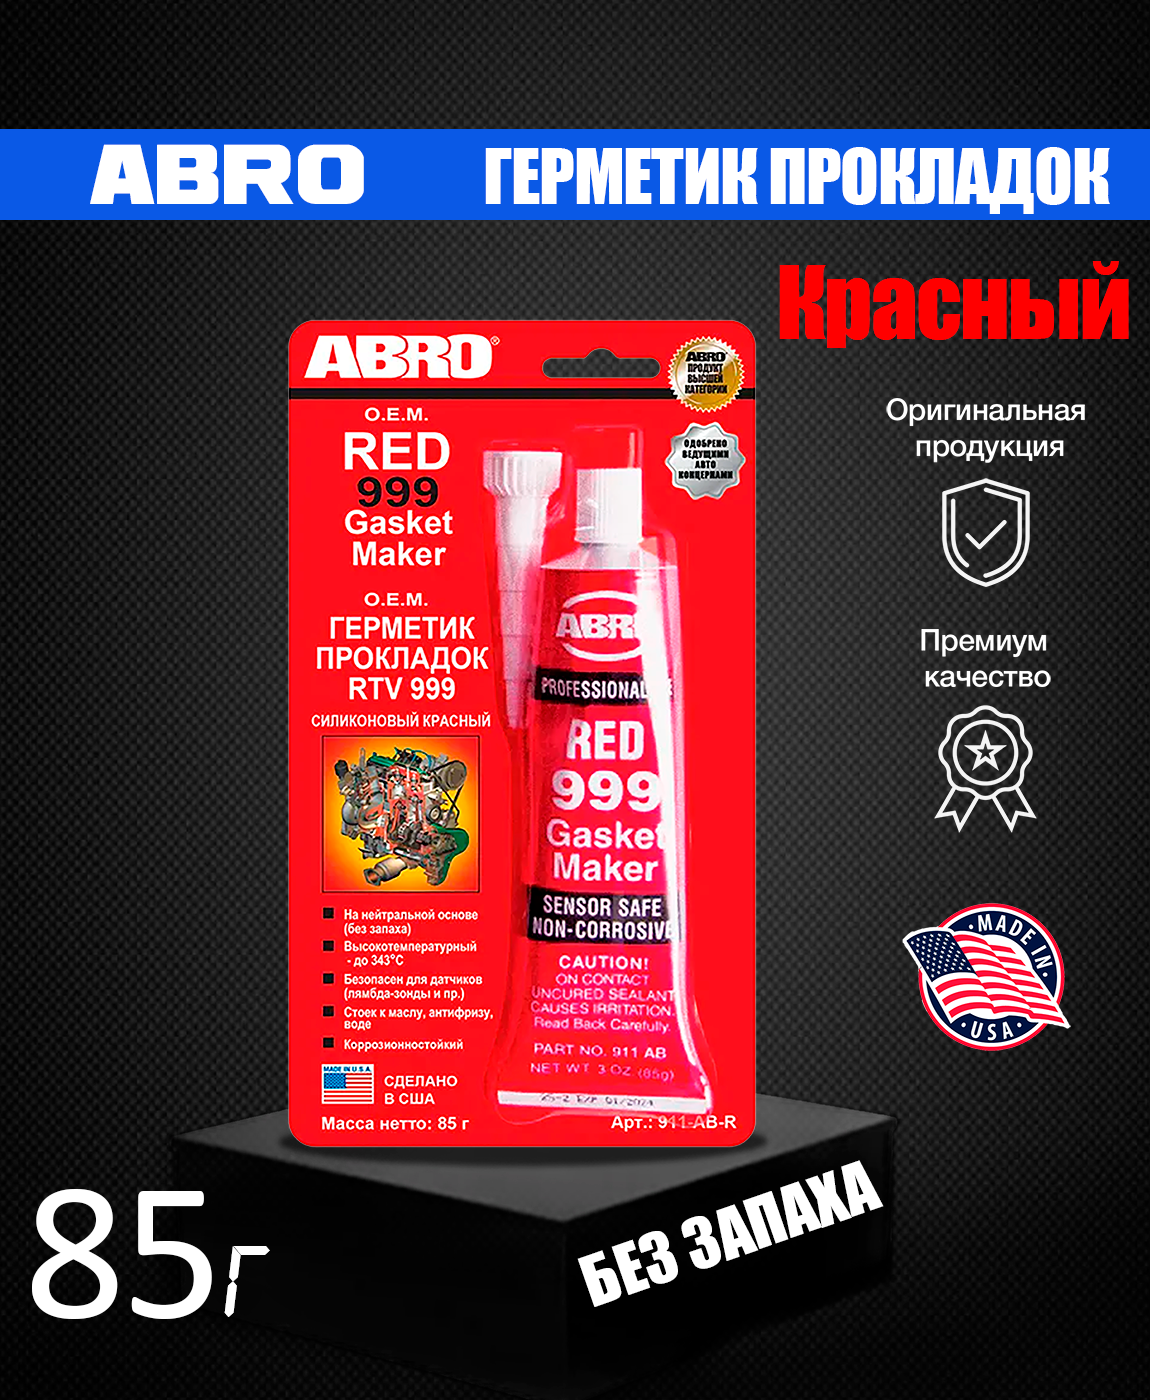 Герметик прокладка abro красный. Высокотемпературный герметик Абро красный. Герметик силиконовый Абро красный. Абро 999. Герметик Абро 999.